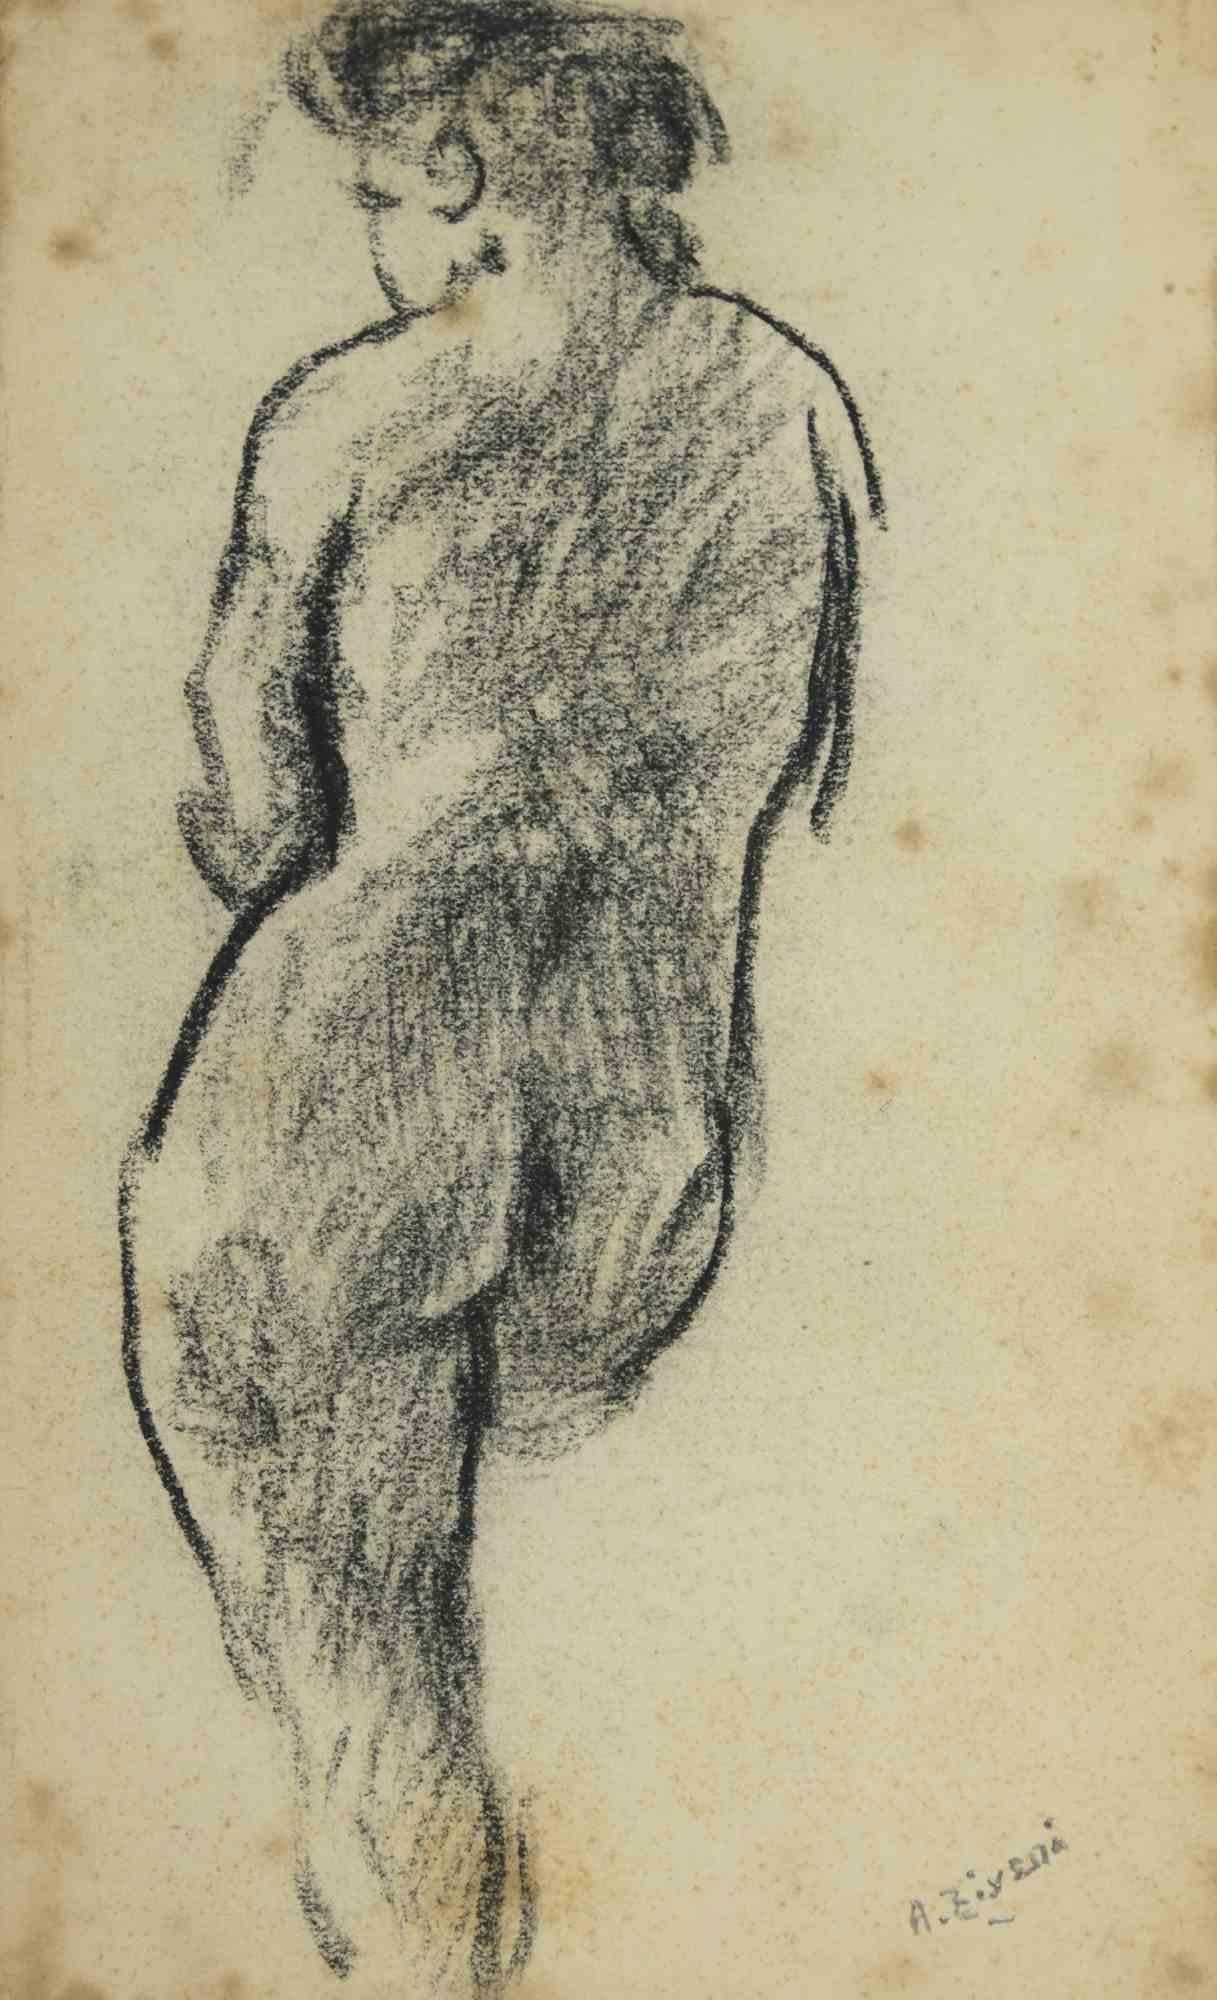 Der Akt ist eine Zeichnung von Alberto Ziveri aus den 1930er Jahren.

Zeichenkohle auf Papier

Handsigniert.

In gutem Zustand. 

Das Kunstwerk wird durch geschickte Striche meisterhaft dargestellt.

Alberto Ziveri (Rom, 1908 - 1990), der